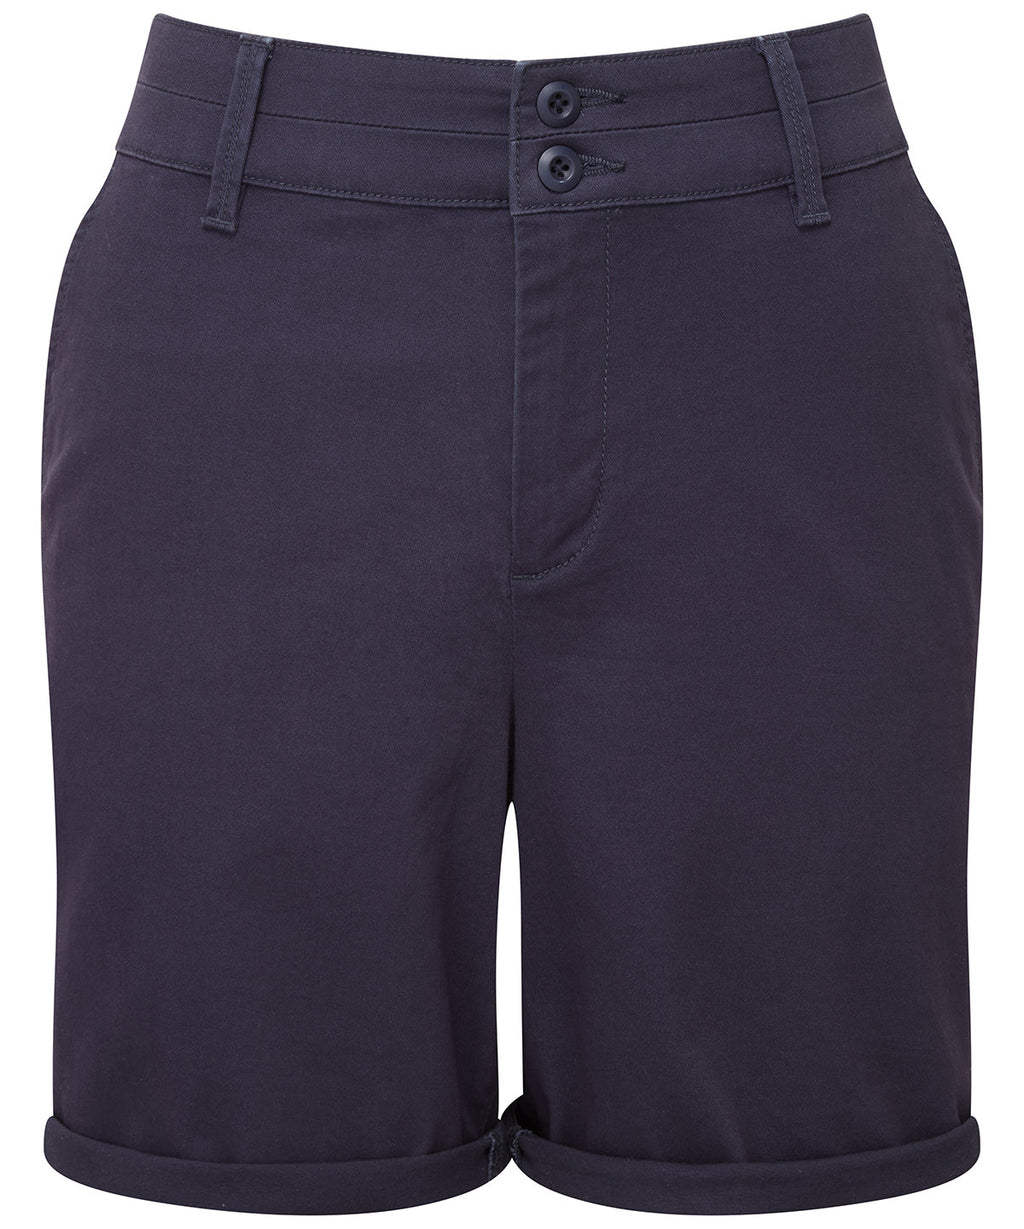 Women's Chino Shorts, Navy